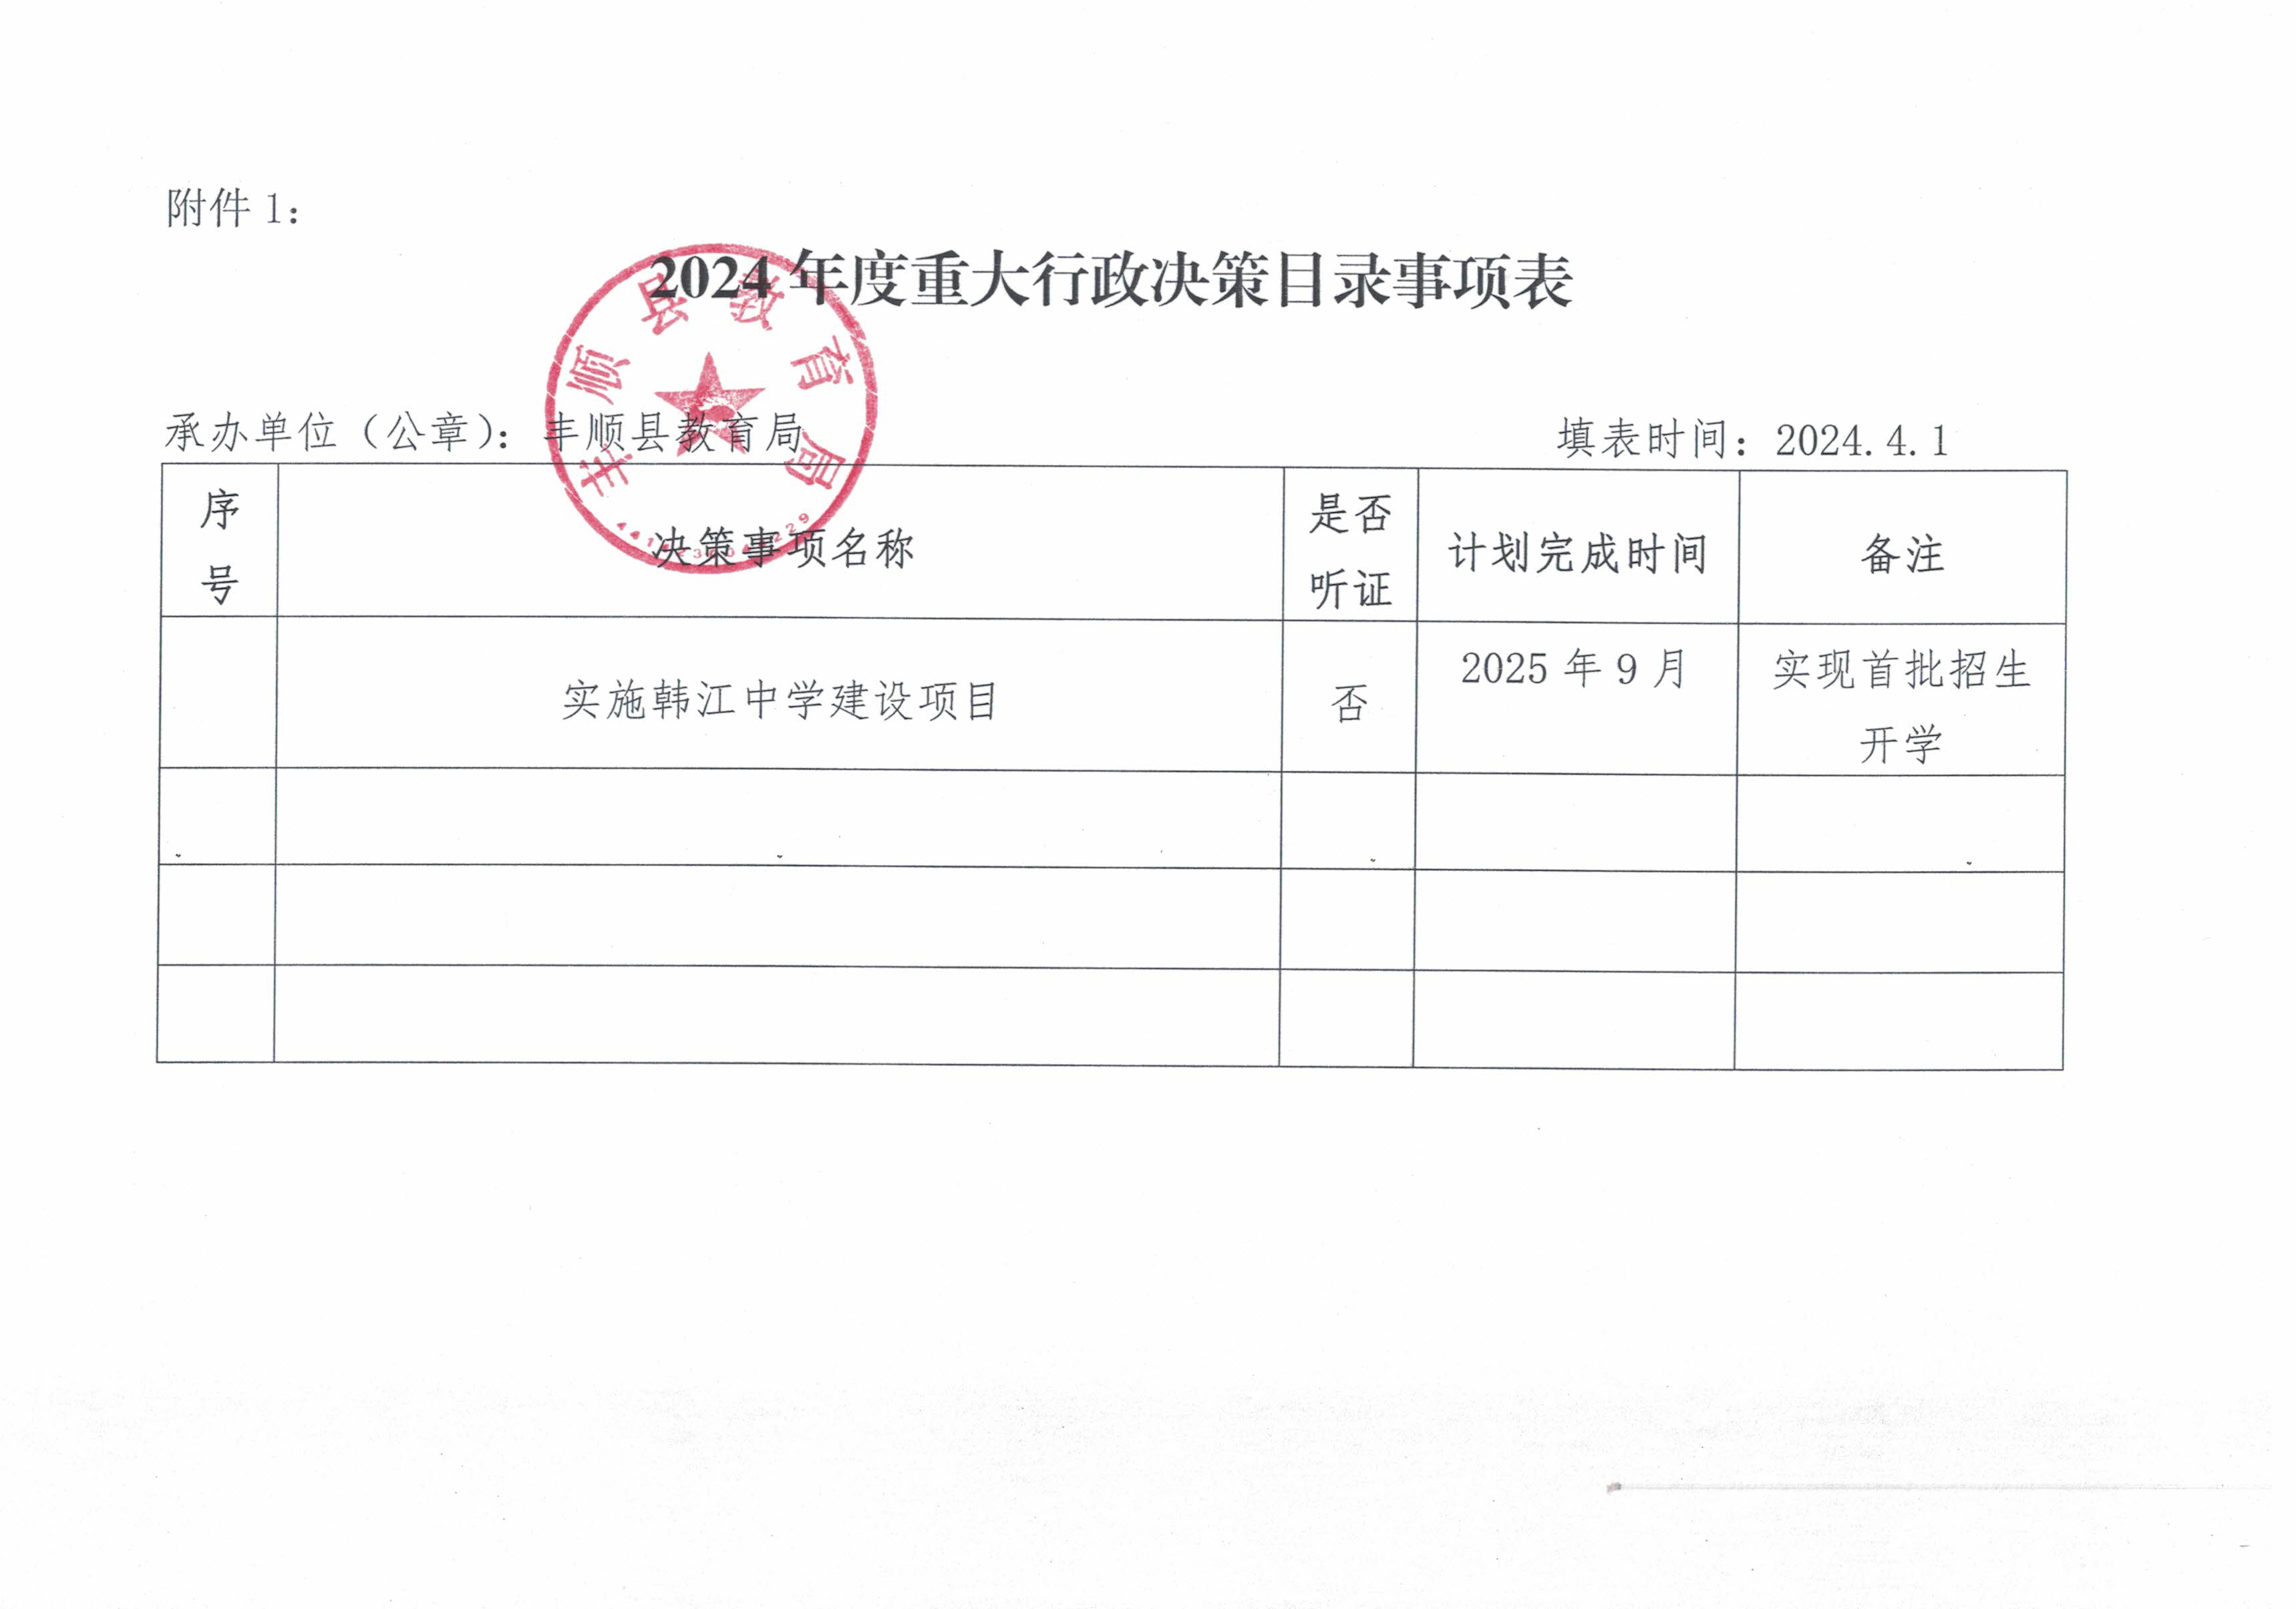 丰顺县教育局2024年度重大行政决策目录事项表.jpg